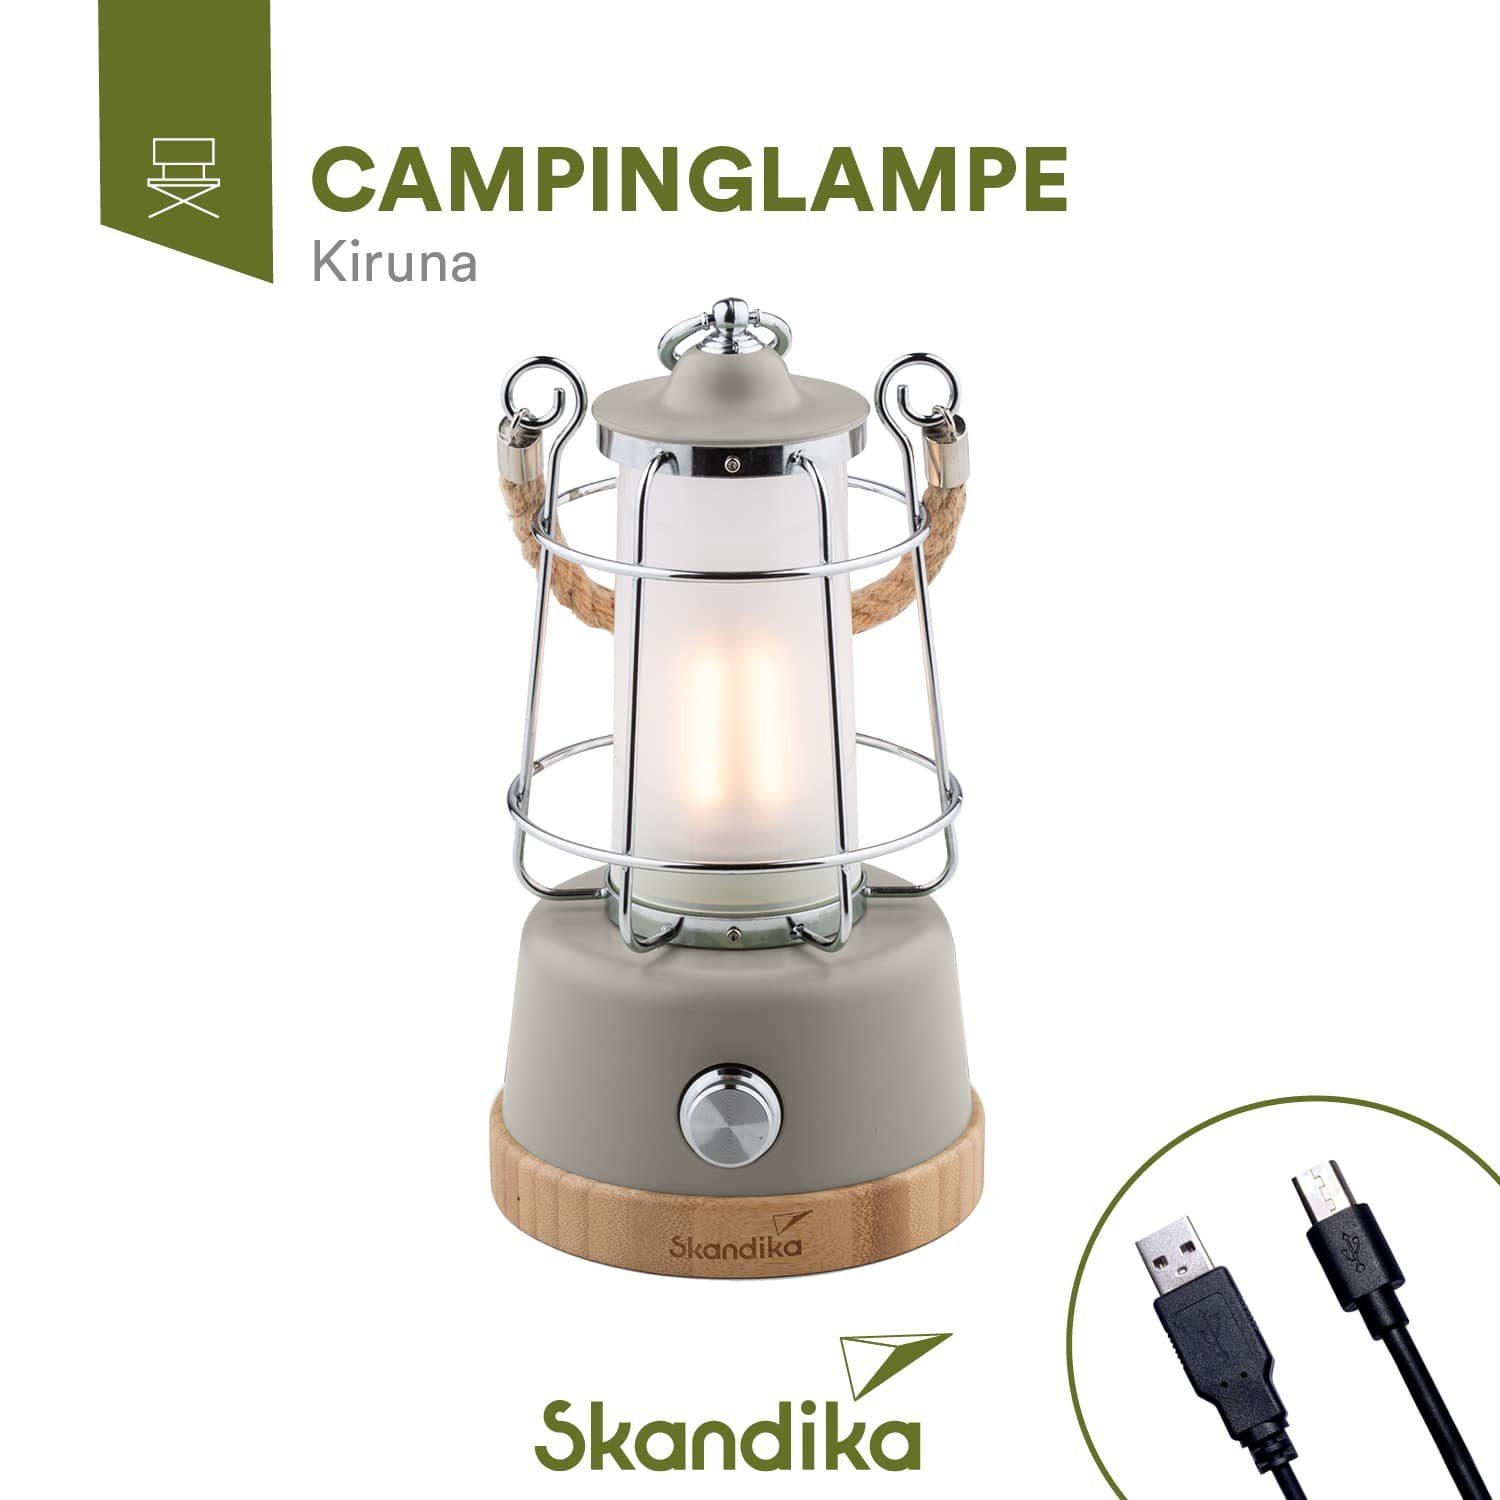 Skandika LED Campinglampe 5000 stufenlos mAh, Kiruna, Powerbank, dimmbar Powerbank mit natur mit Gartenleuchte Campinglampe